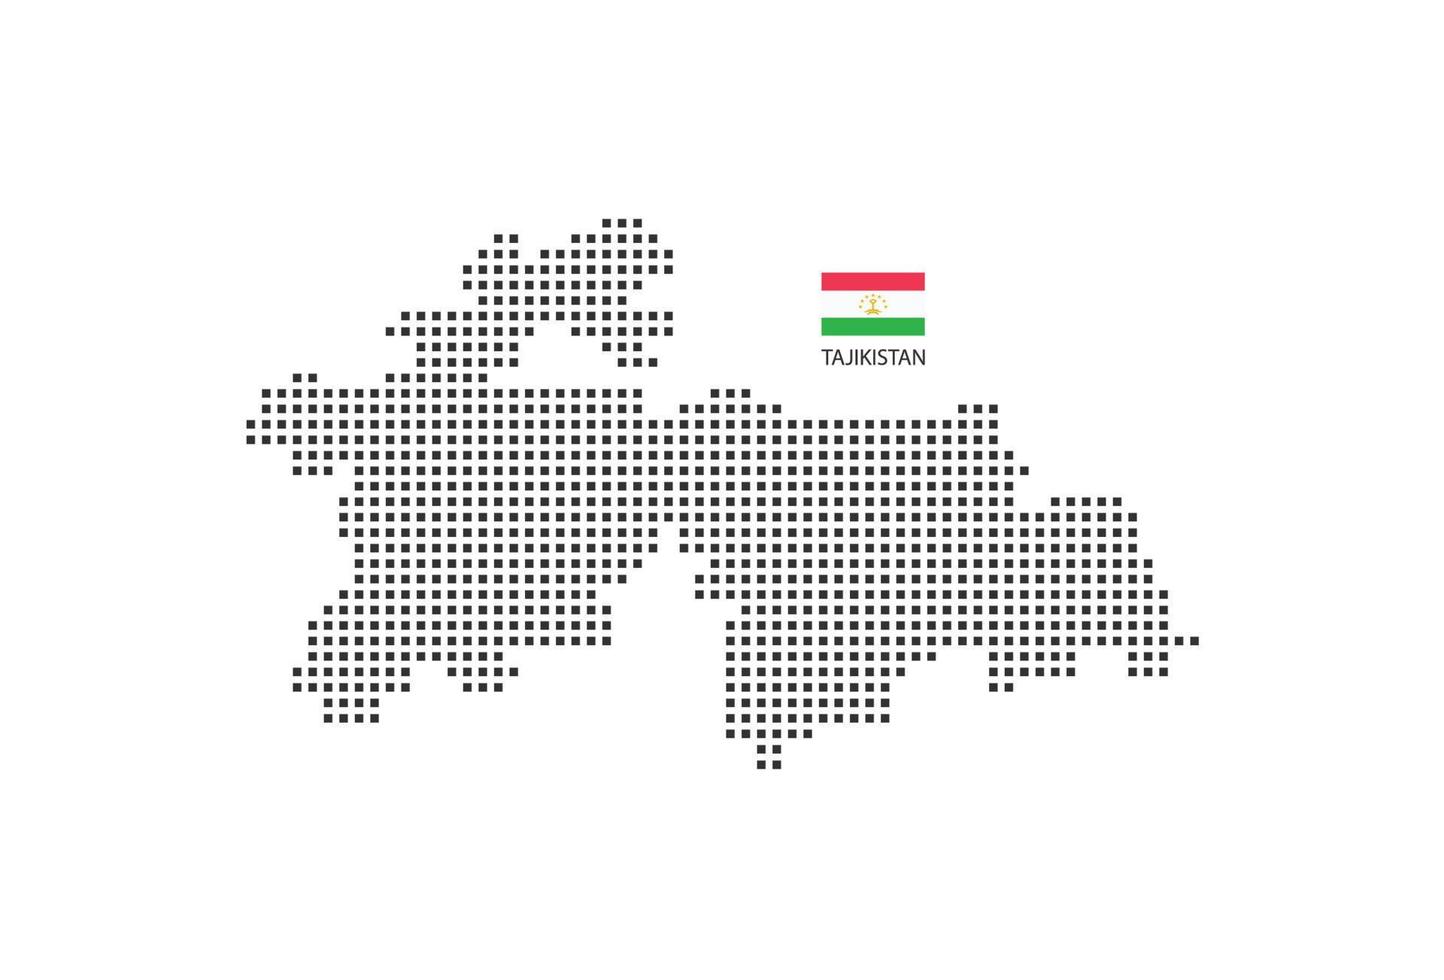 Vektor quadratische Pixel gepunktete Karte von Tadschikistan isoliert auf weißem Hintergrund mit Tadschikistan-Flagge.